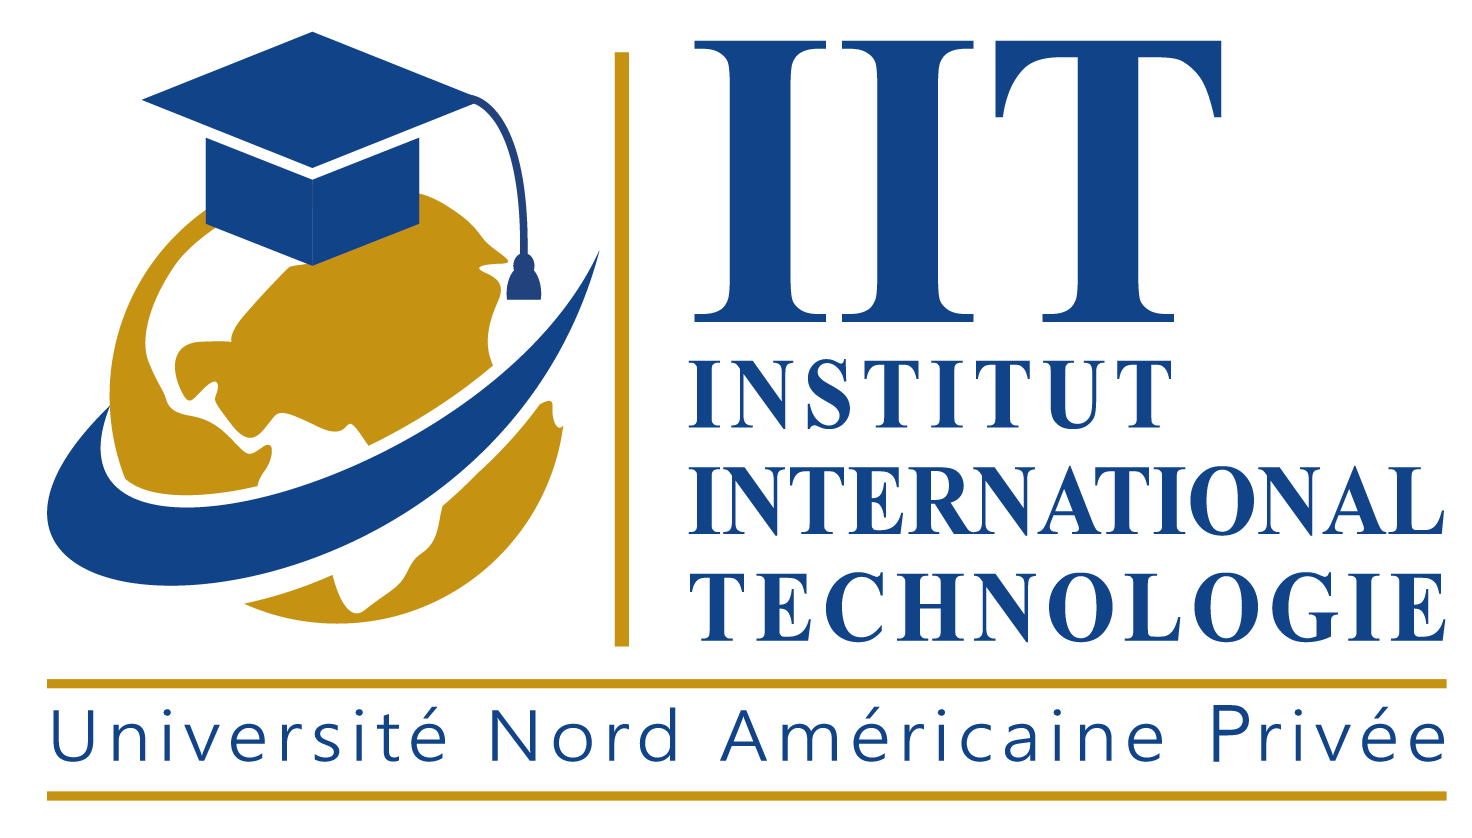 GÉNIE INFORMATIQUE - Institut International Technologie